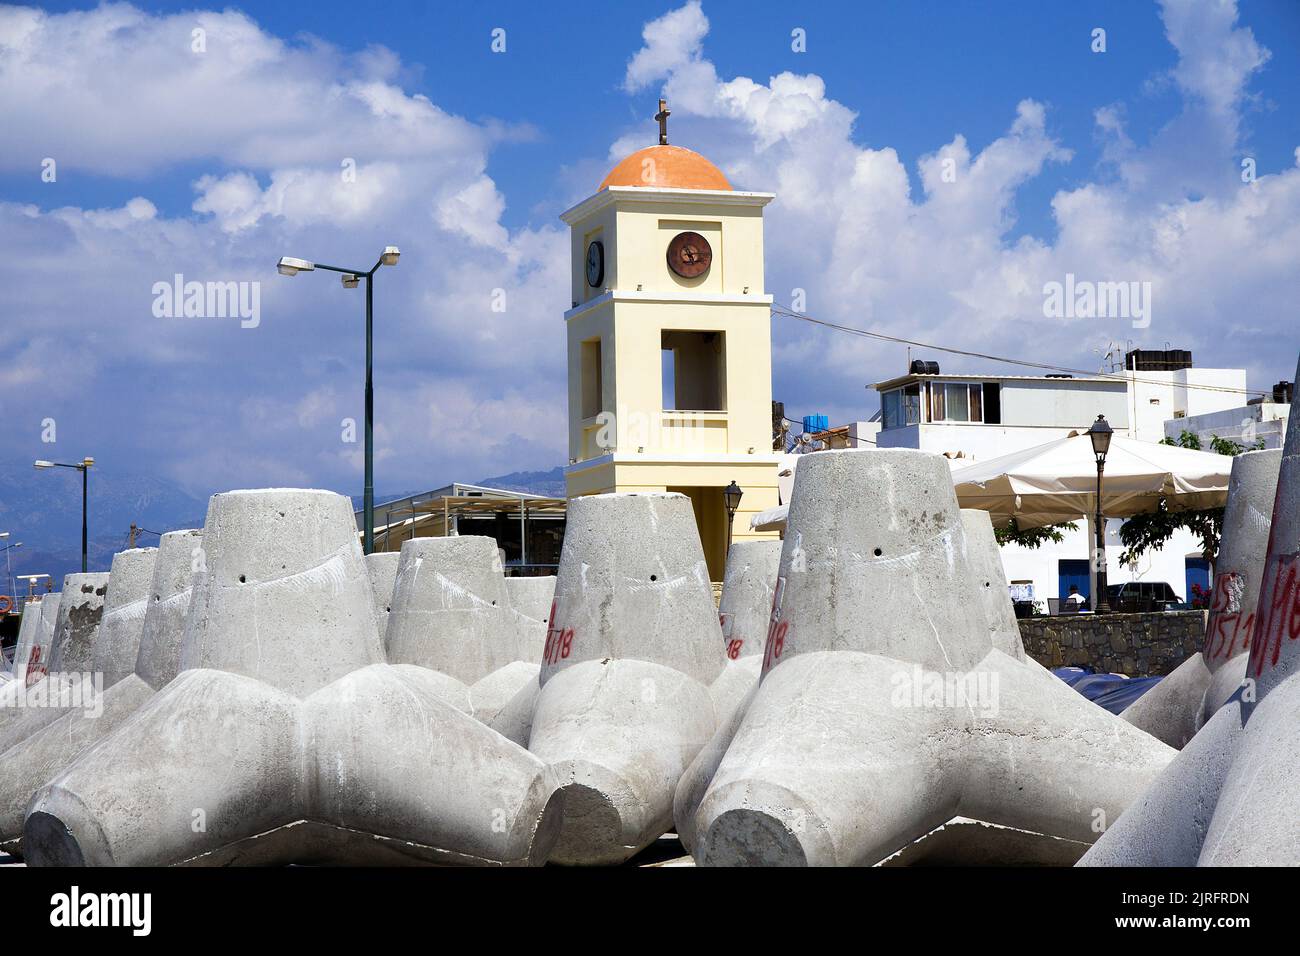 Küstenschutz, Tetrapoden am Hafen von Ierapetra, schönste Stadt Griechenland, Kreta, Griechenland, Europa | Tetrapoden am Hafen von Ierapetra Stockfoto